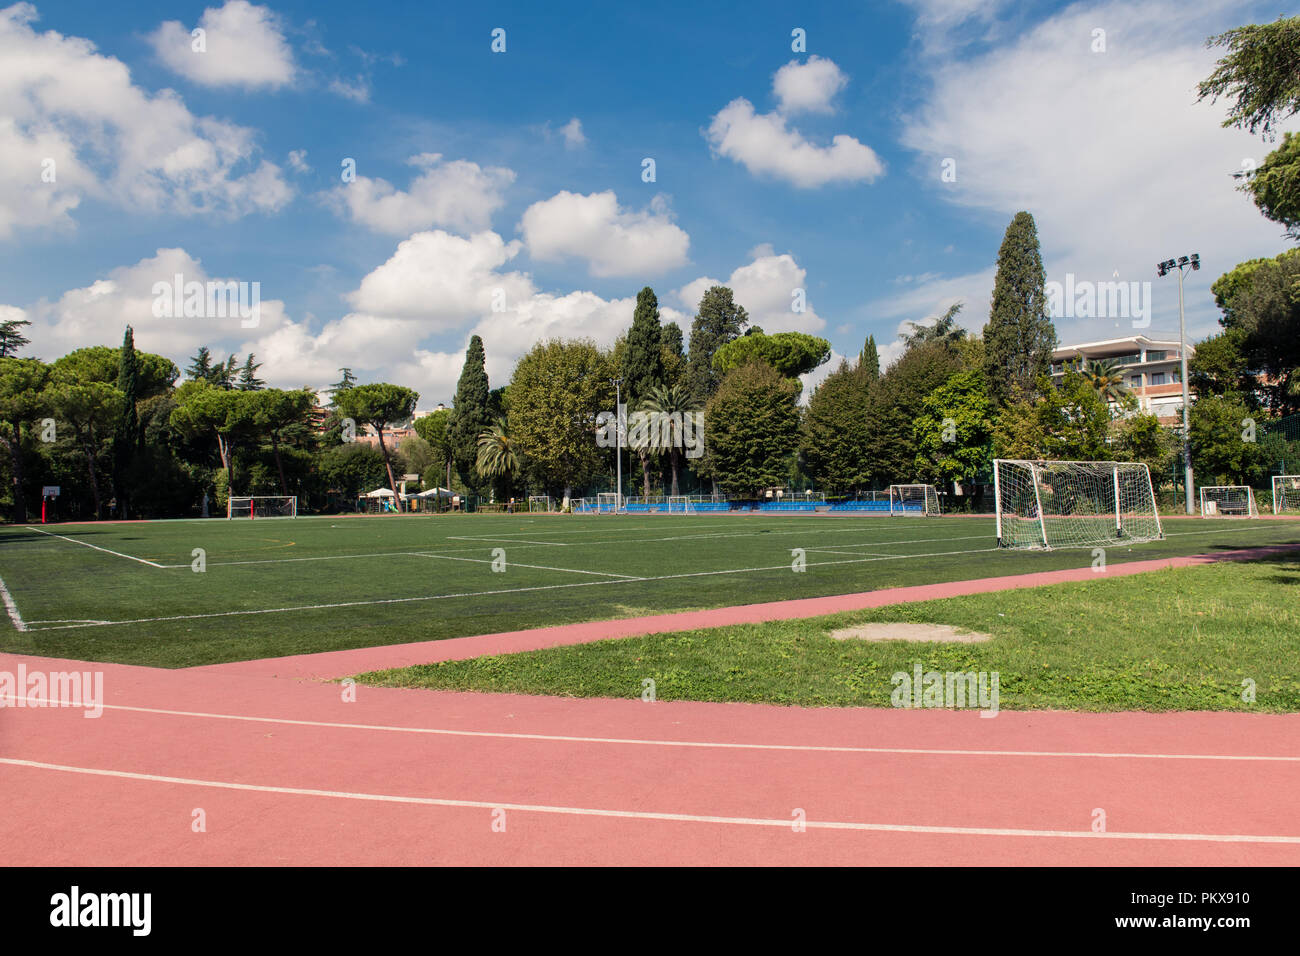 Weite Einstellung auf grünen Fußballfeld im Park mit Leichtathletikbahn und Bäume um, kein Volk Querformat Stockfoto